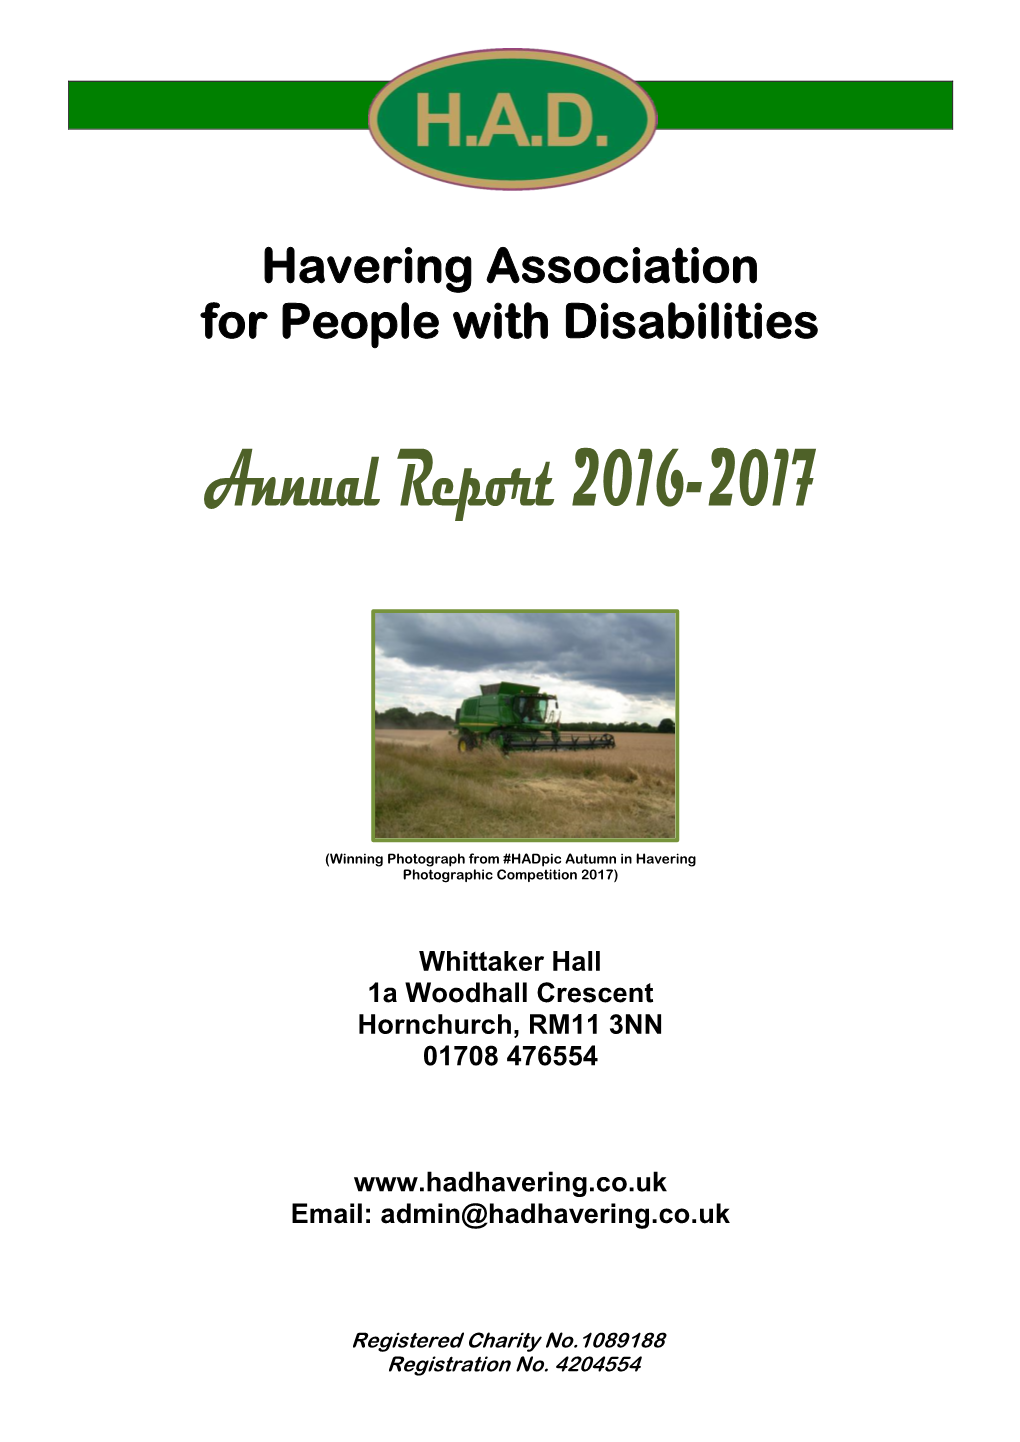 H.A.D. Annual Report 2016-2017